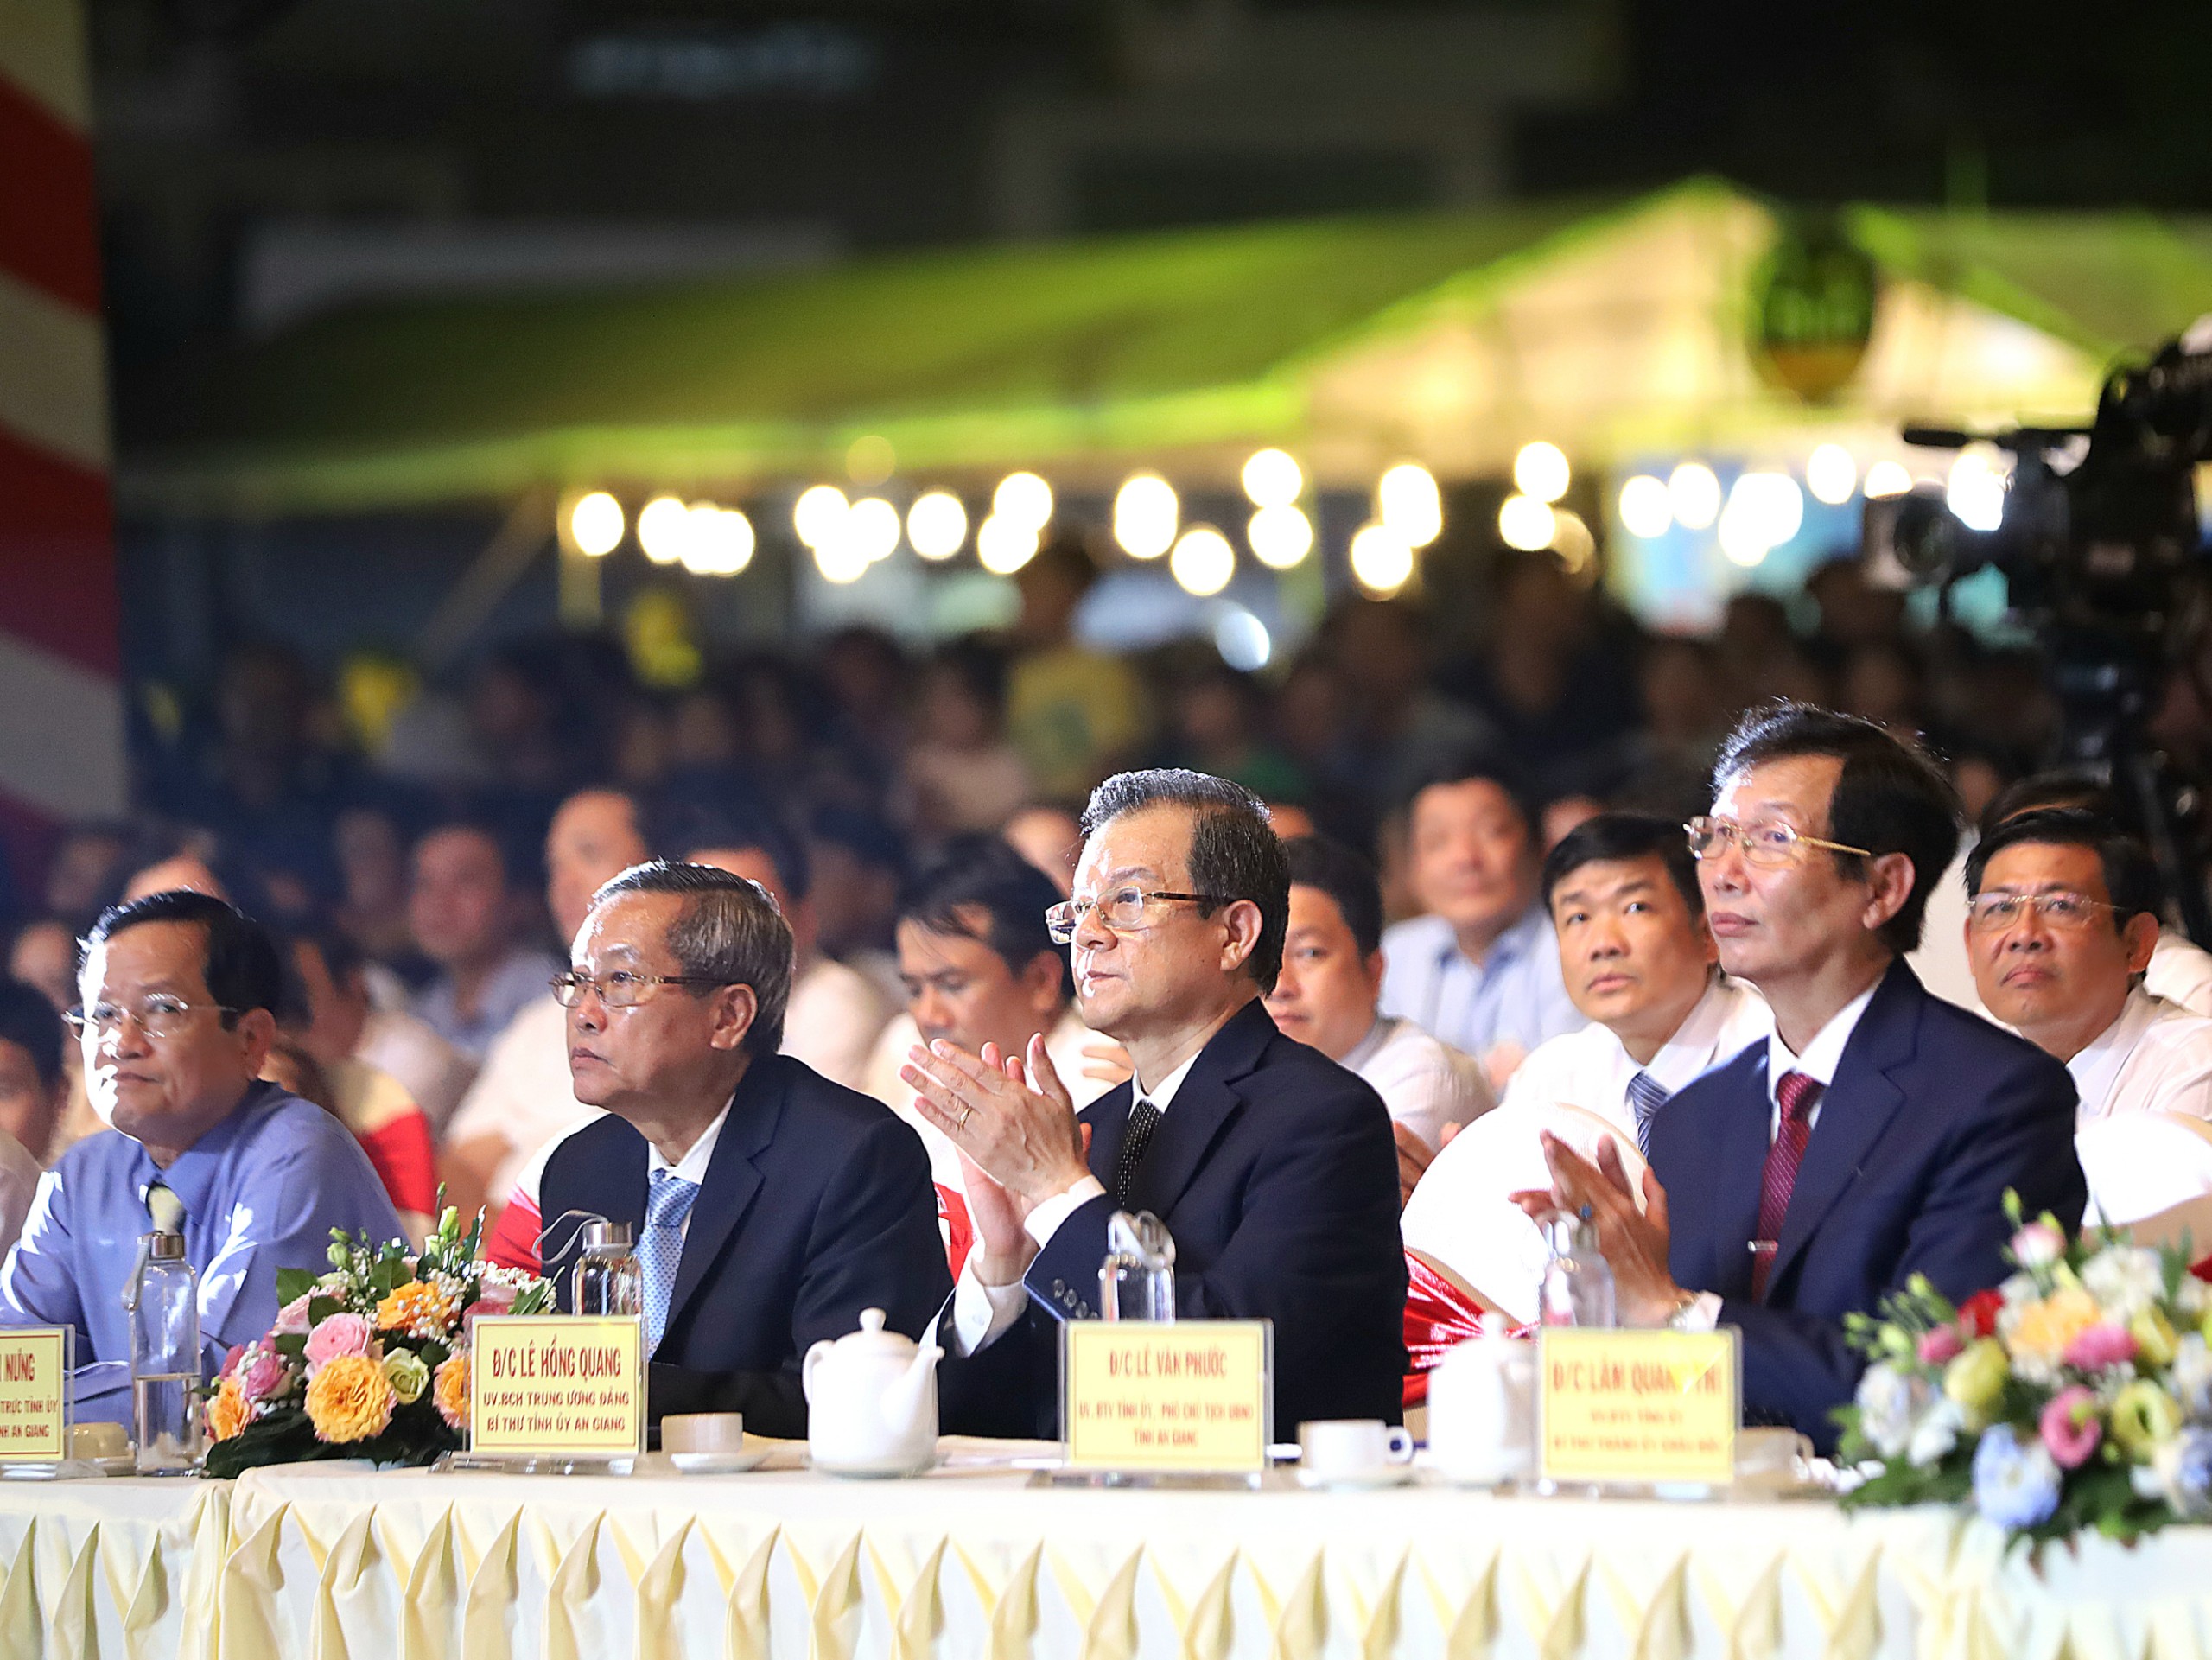 Ông Lê Hồng Quang - Ủy viên BCH Trung ương Đảng, Bí thư Tỉnh ủy An Giang (thứ 2 từ phải qua) tham dự lễ khai hội.